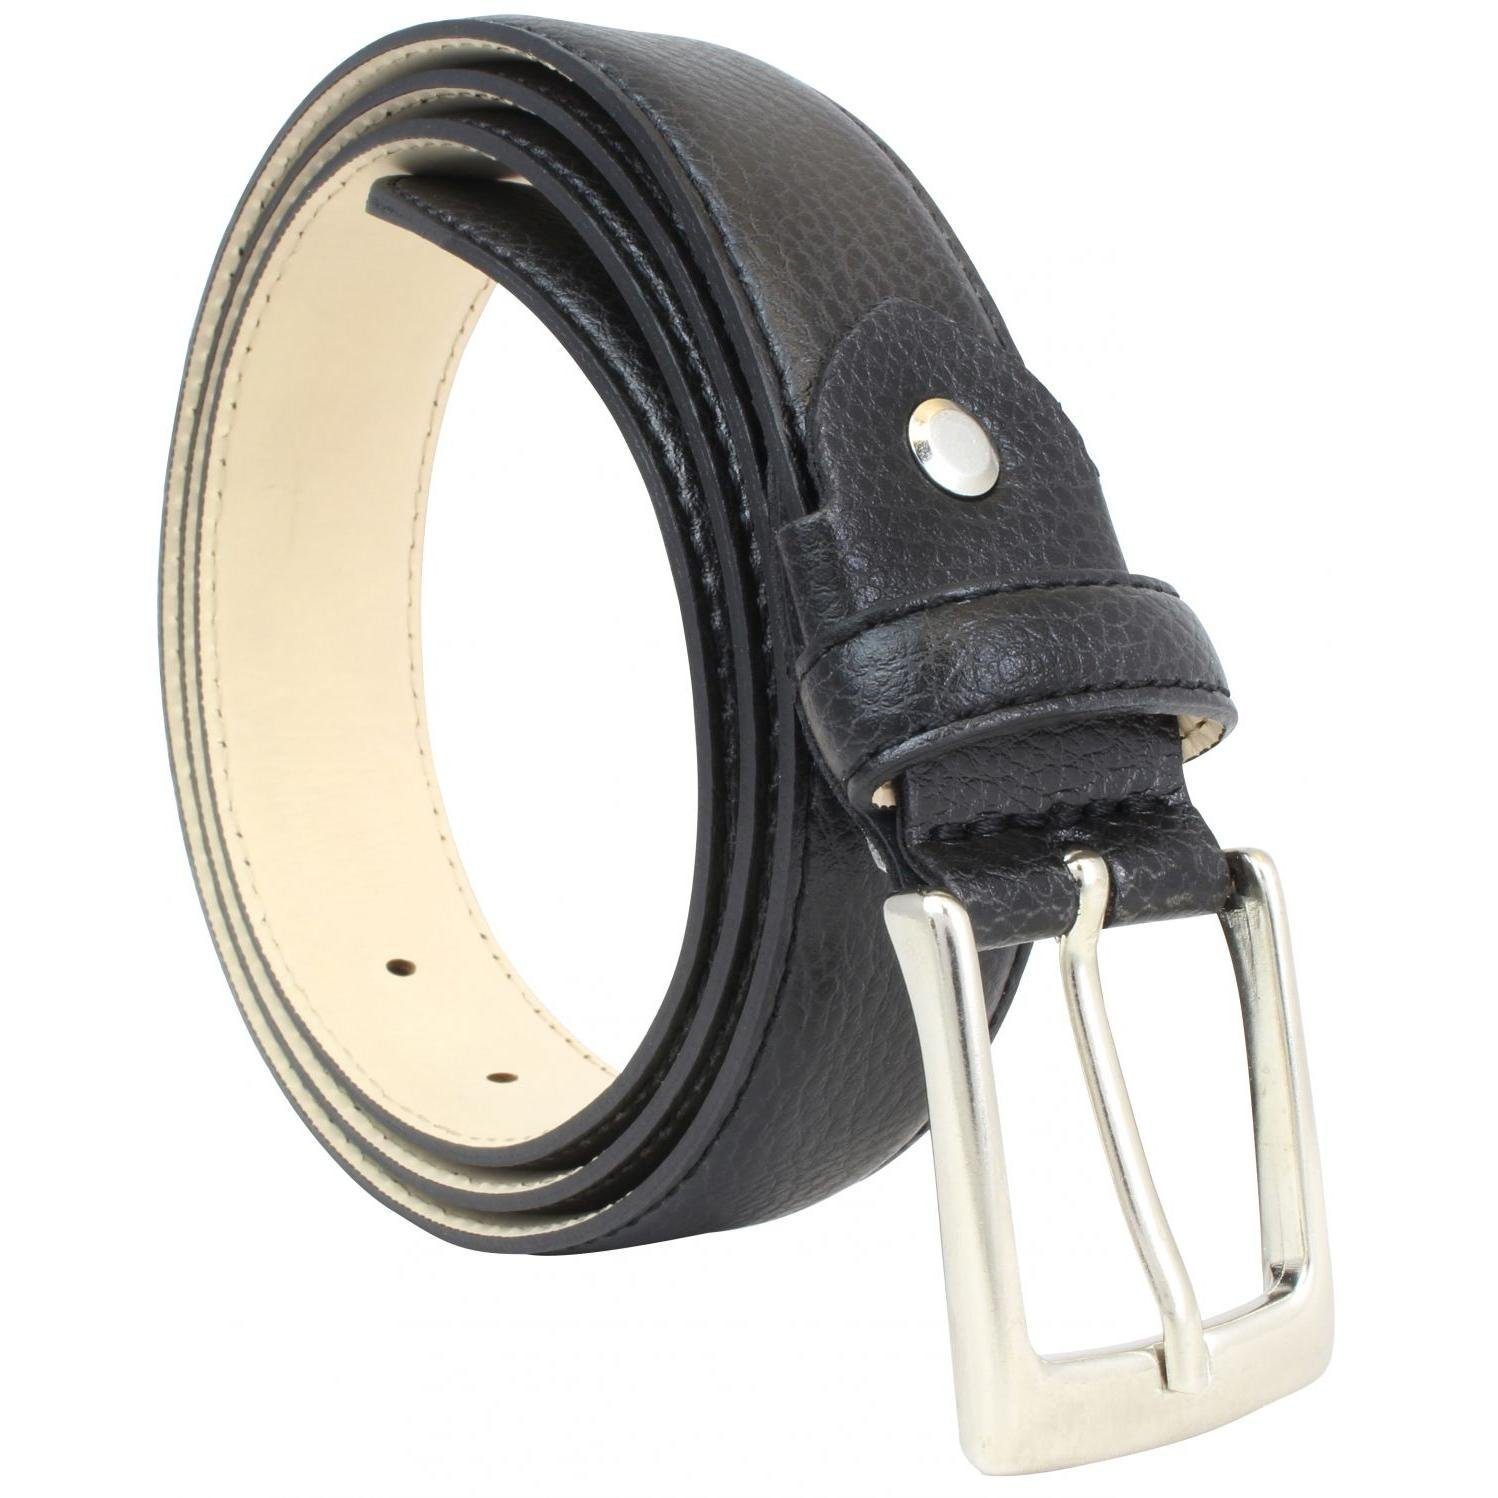 3cm mit eleganter Oberfläche BELTINGER Anzuggürtel Schwarz 3cm Her für Business-Gürtel Ledergürtel -